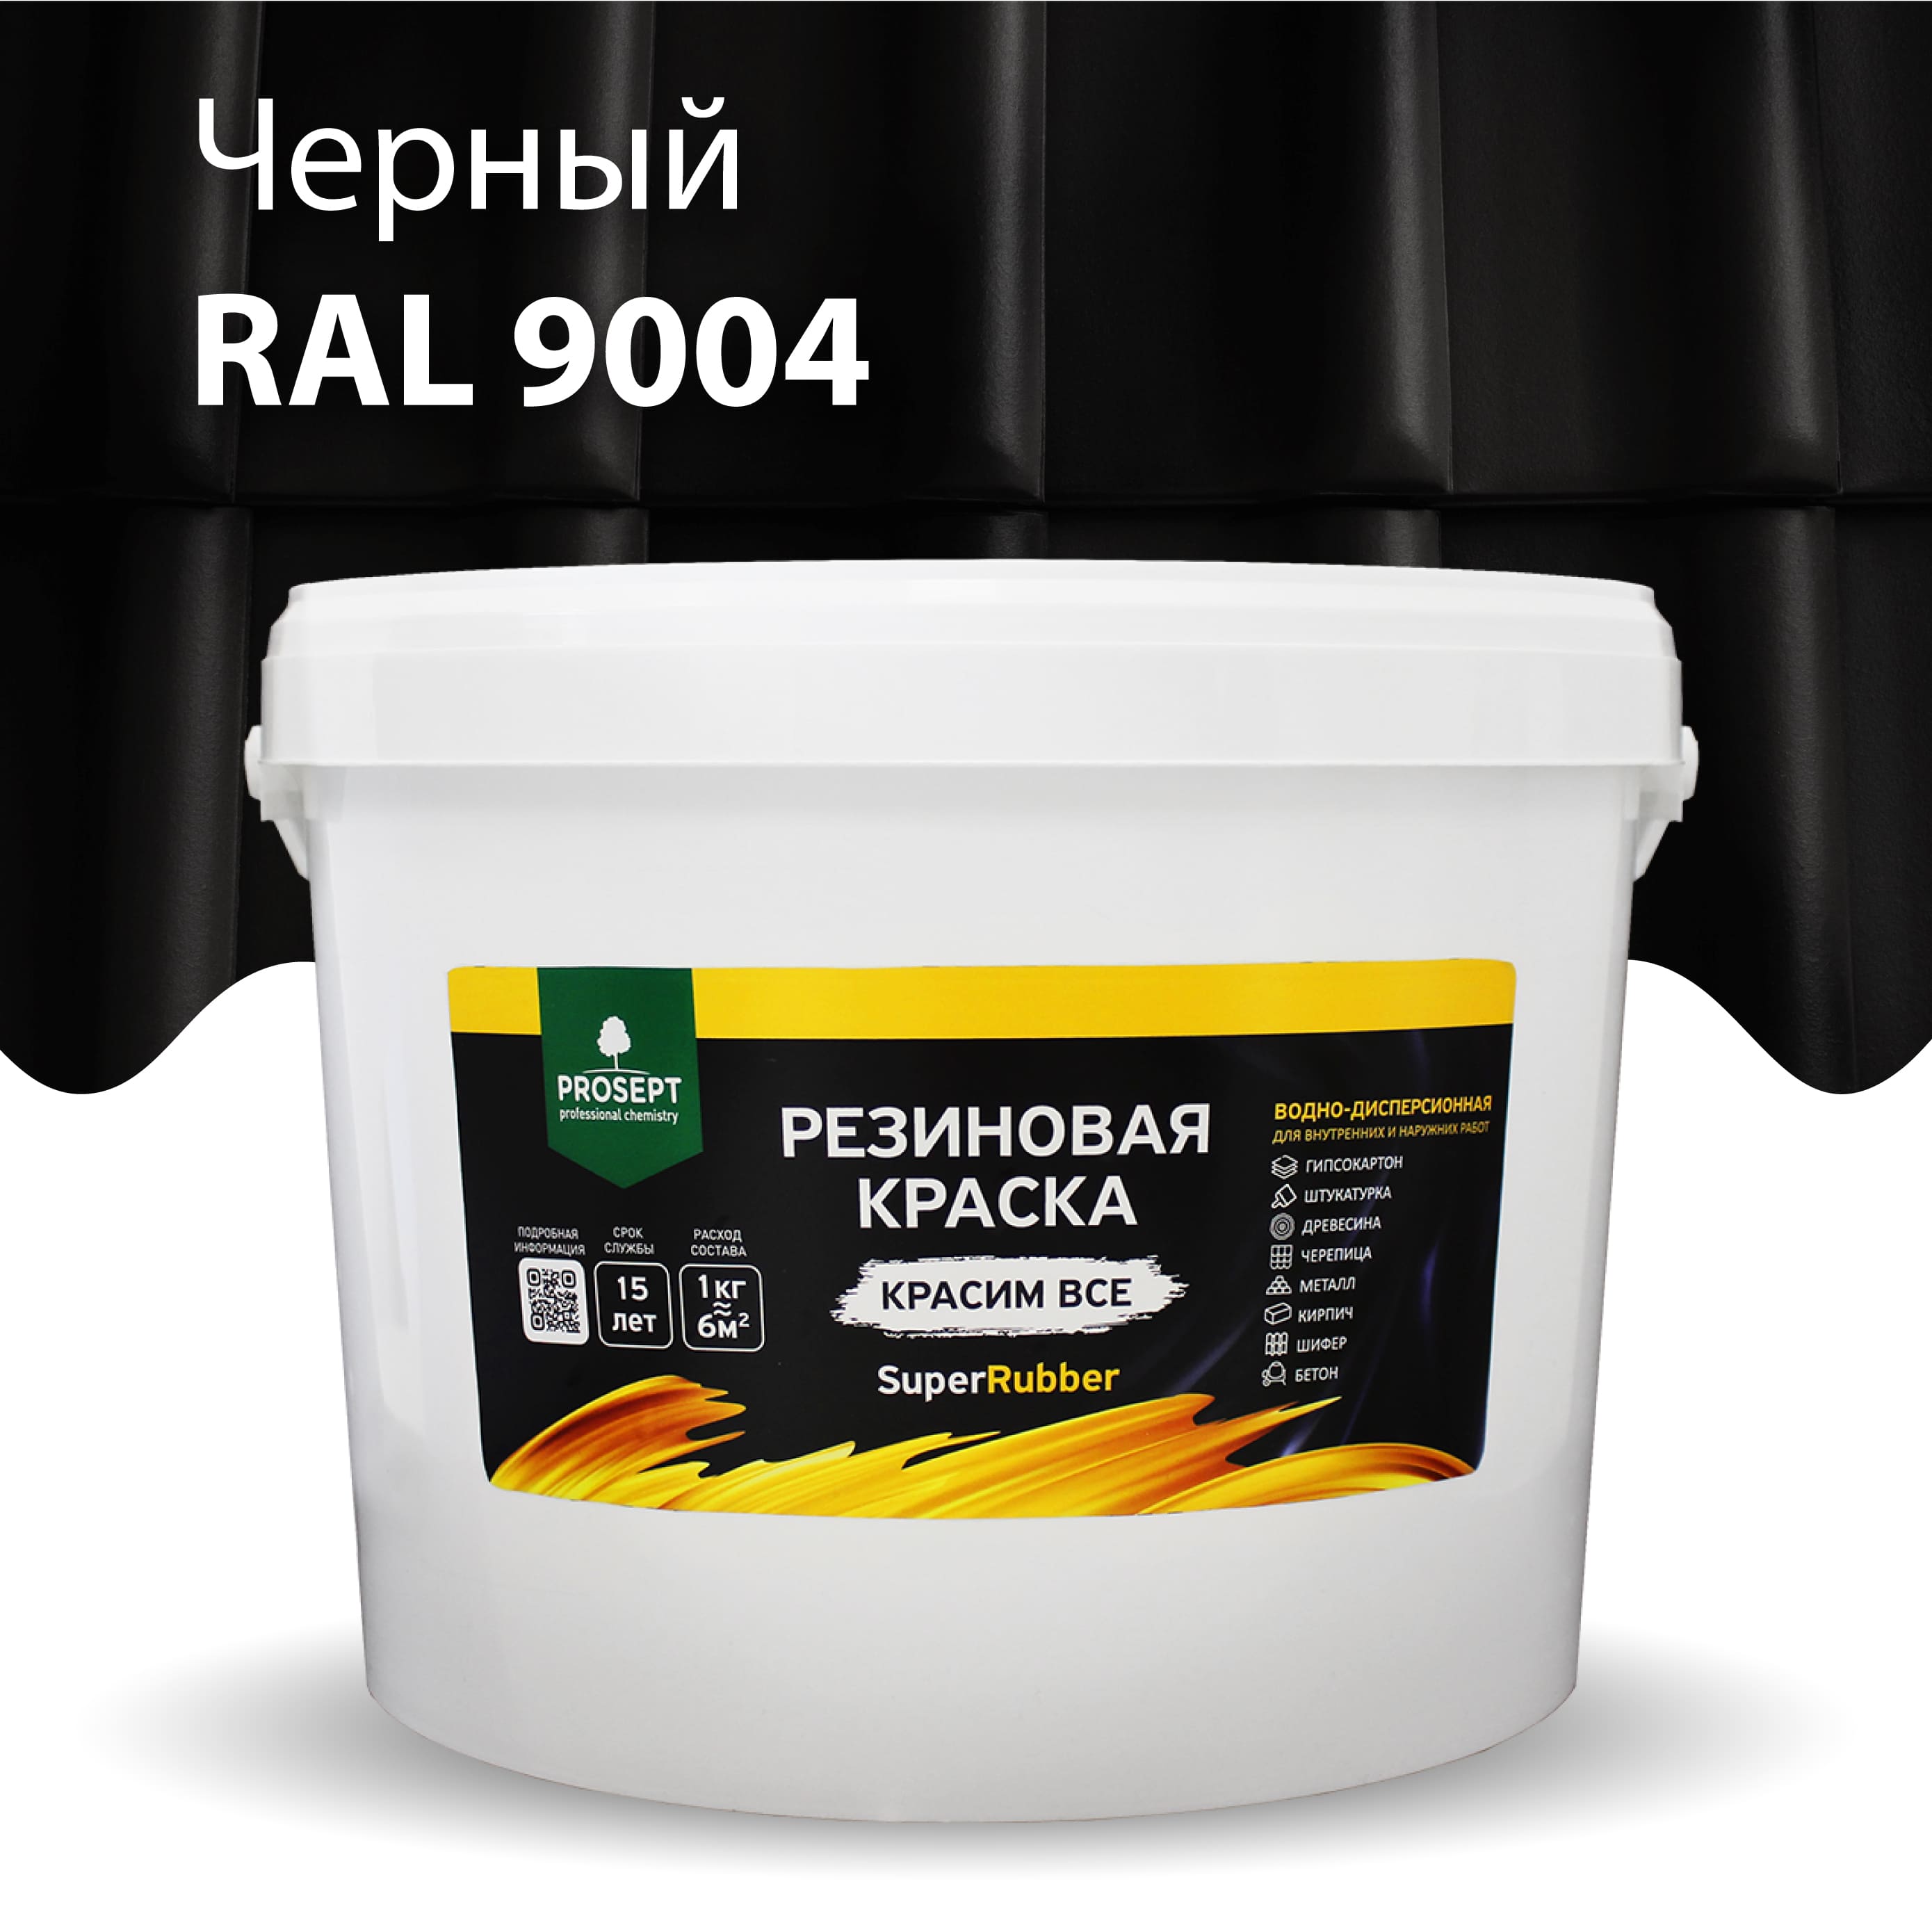 Краска Резиновая краска SuperRubber, RAL 9004 (черная), 12 кг